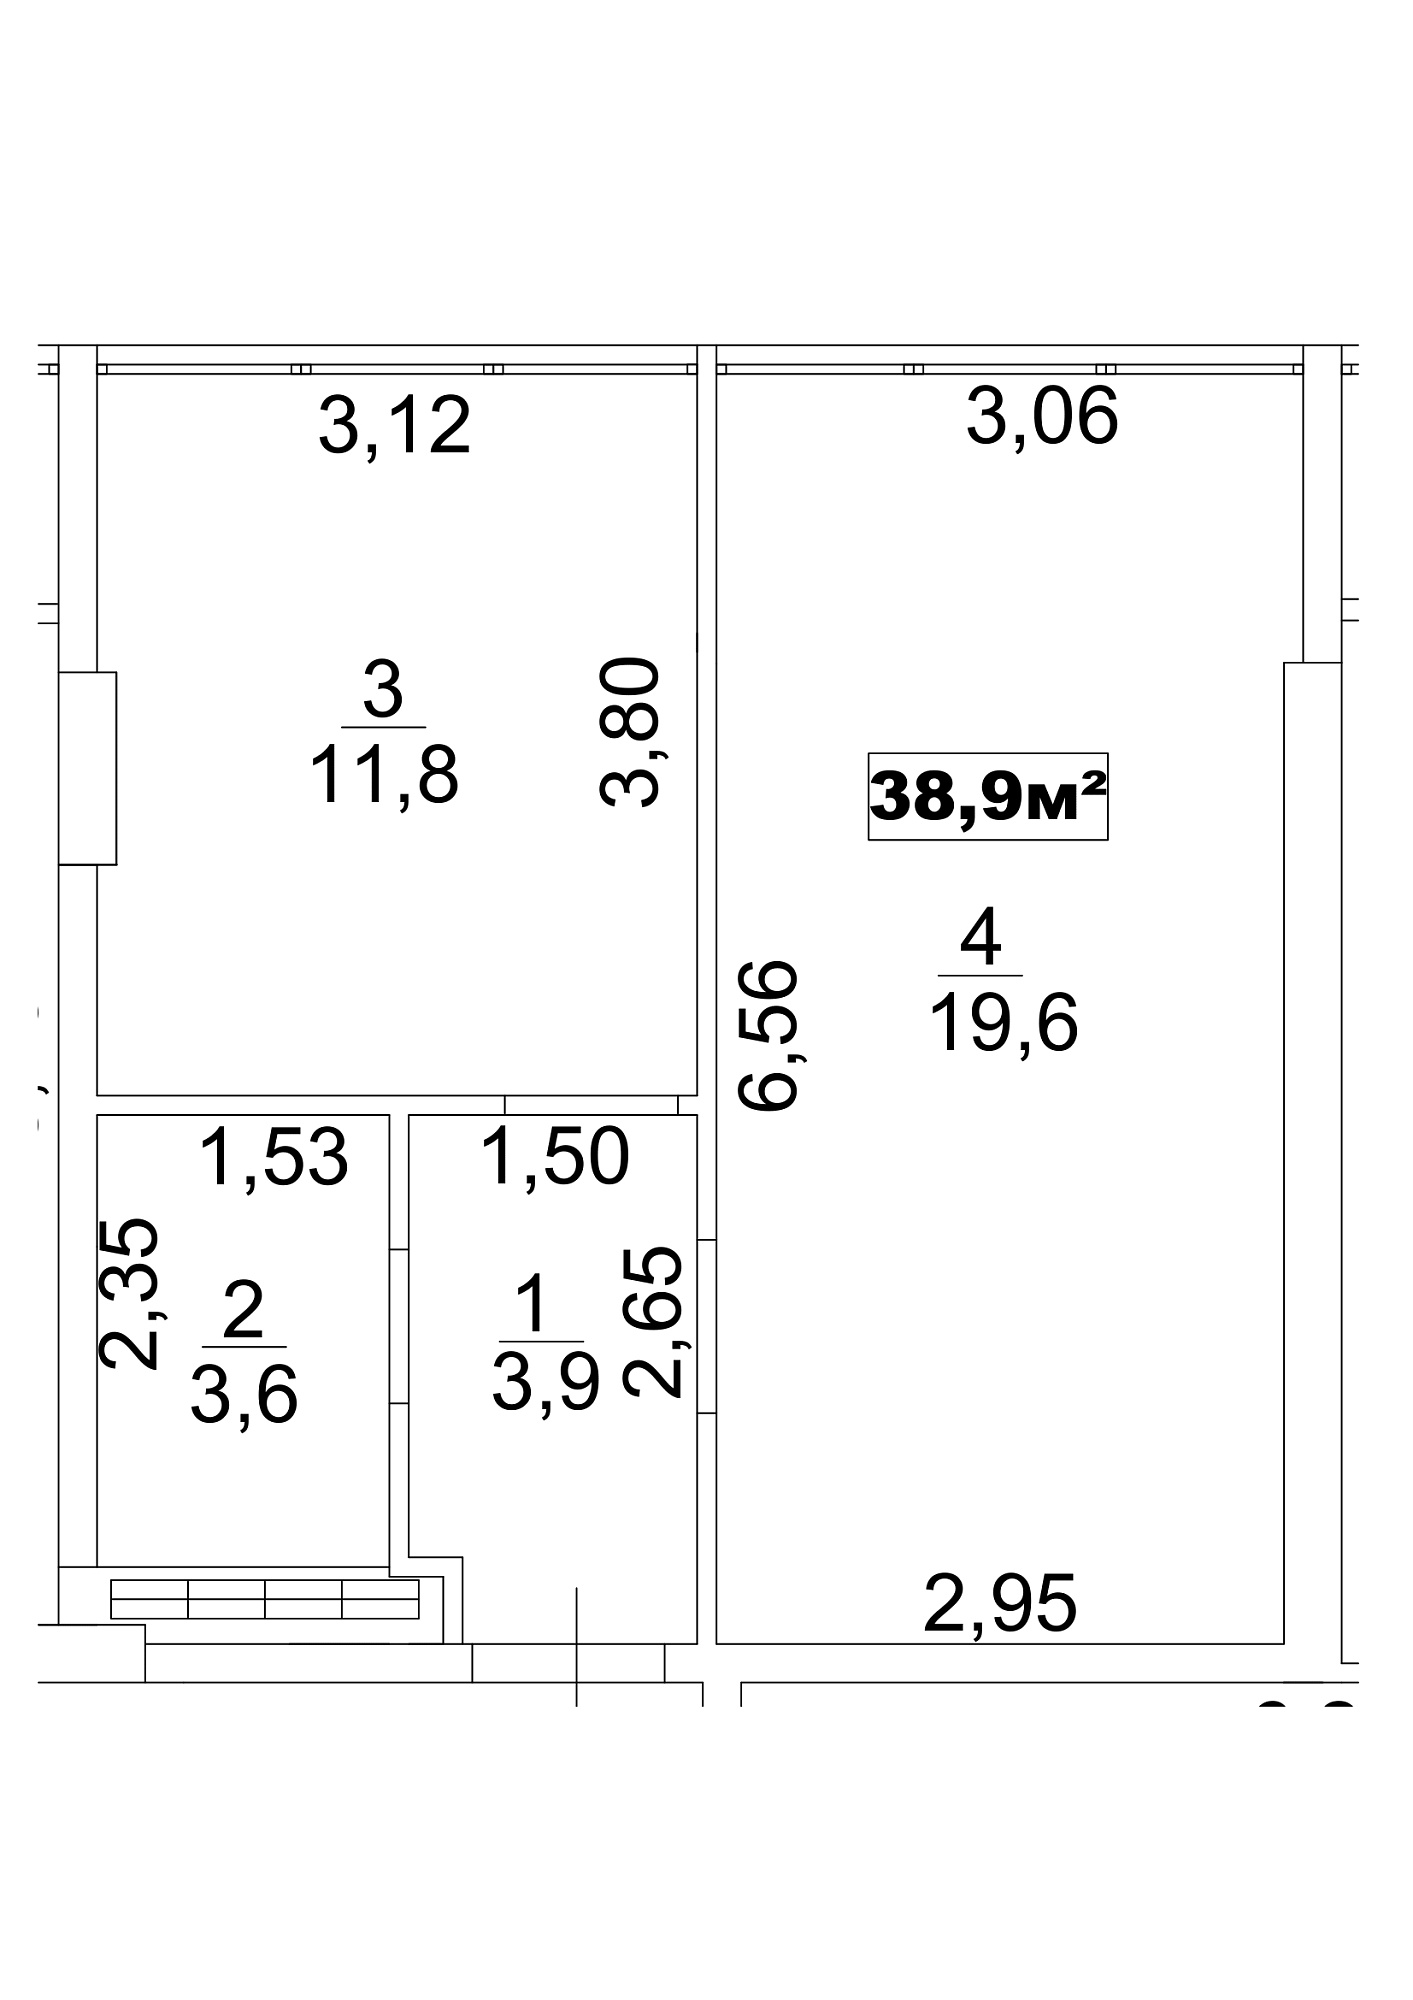 Планировка 1-к квартира площей 38.9м2, AB-13-06/0048а.